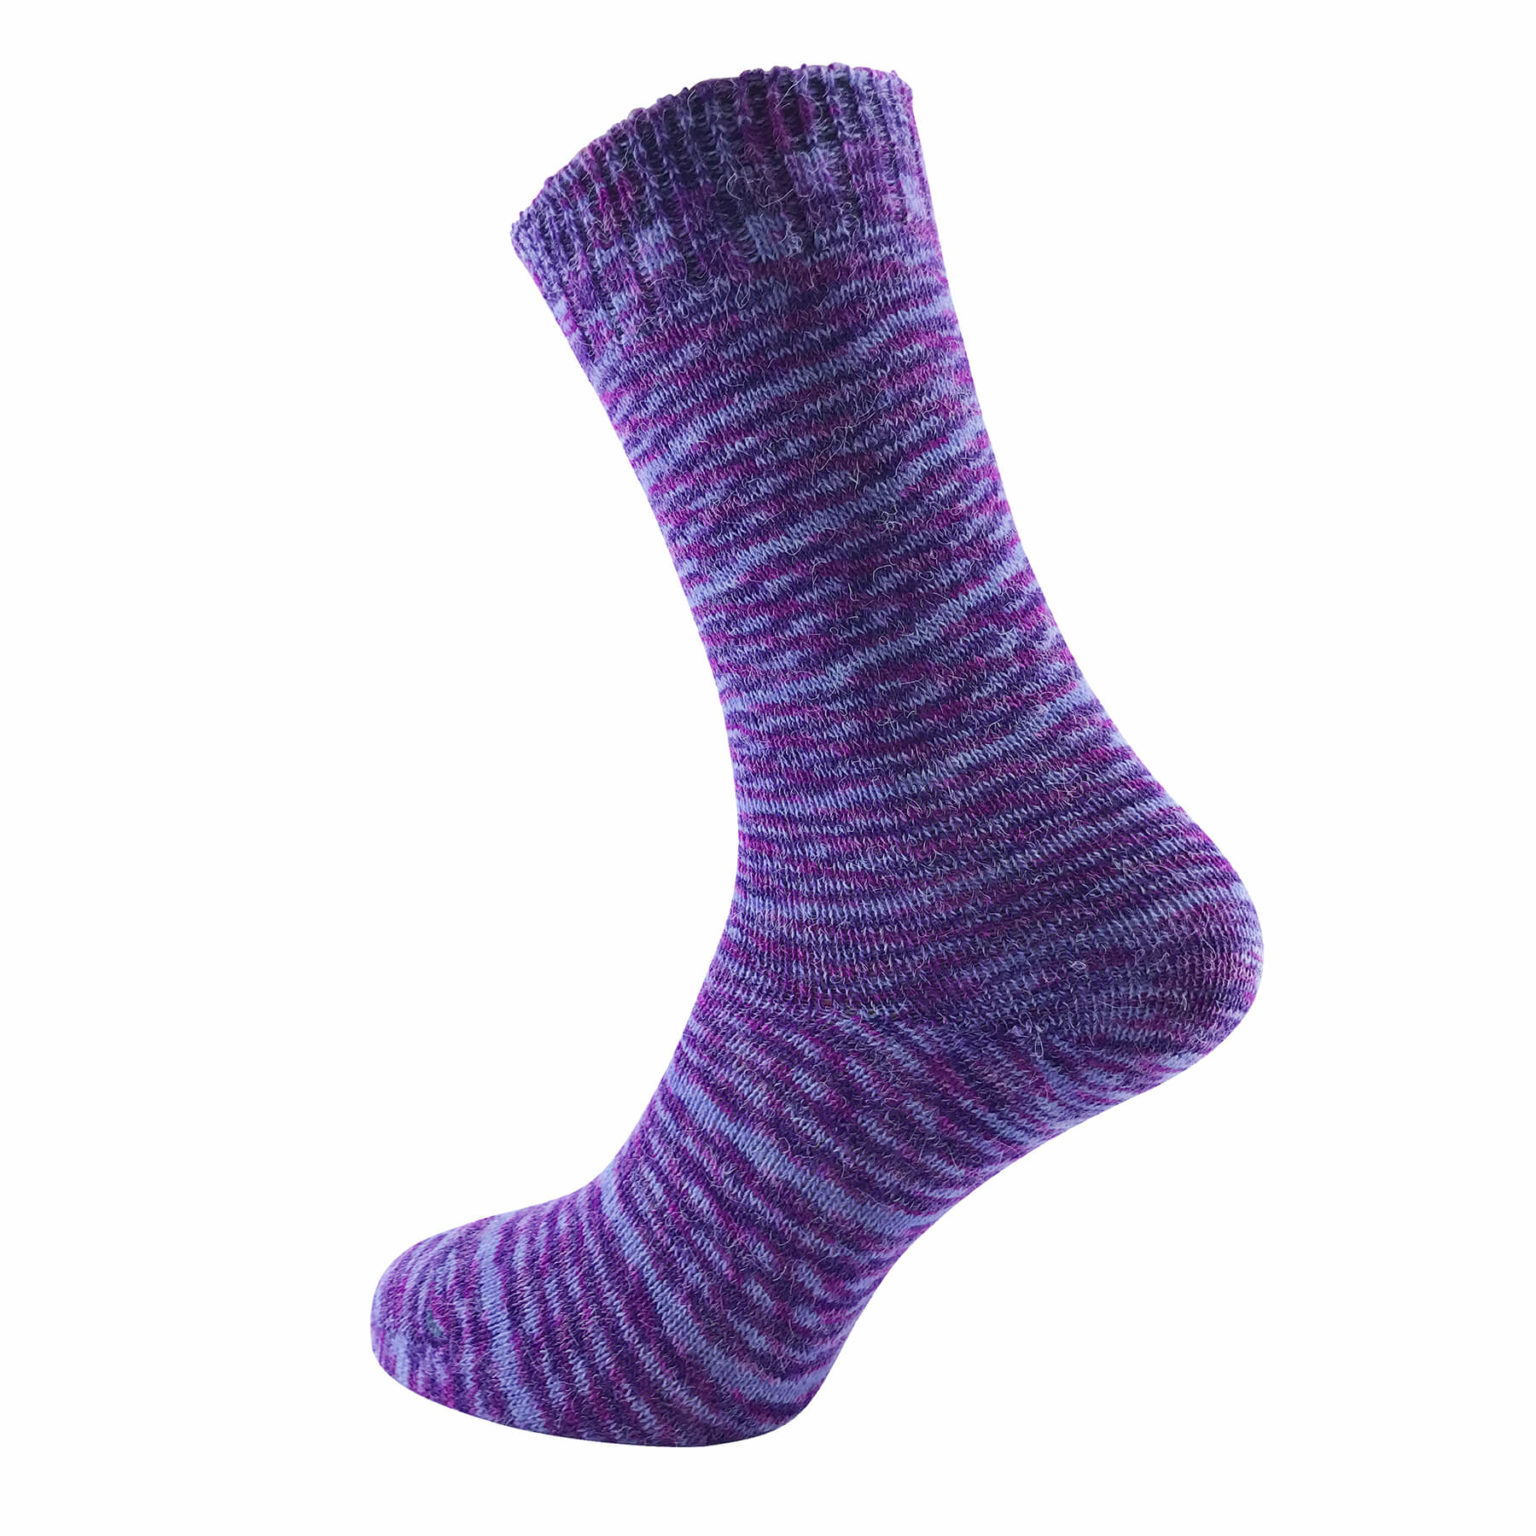 Flexiwear® Women’s Merino Wool Socks Purple - ChiliJo Luxury and High ...